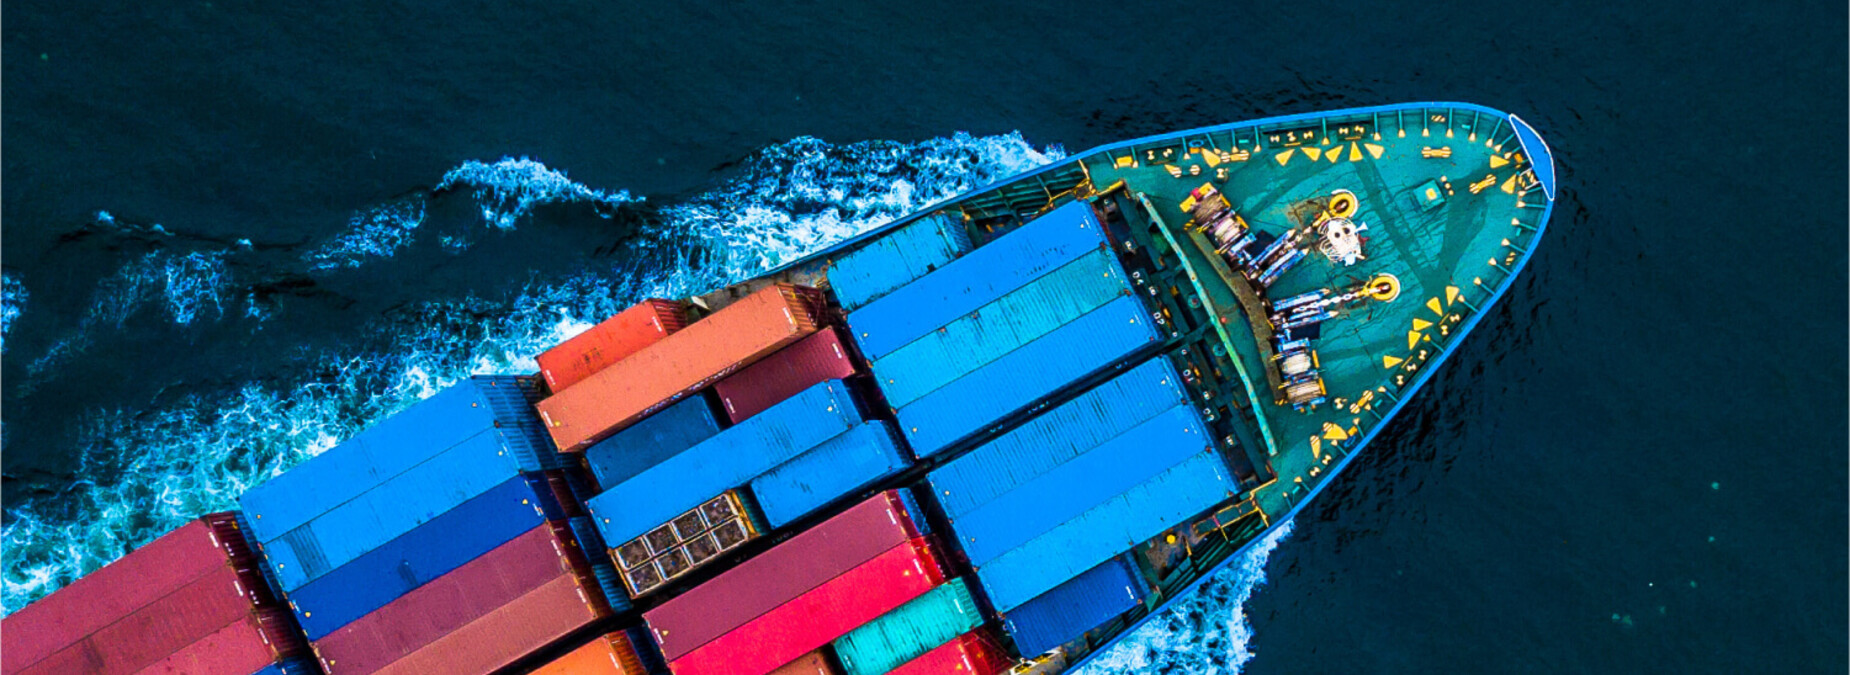 Container-Seeverkehr und Seefrachtspedition